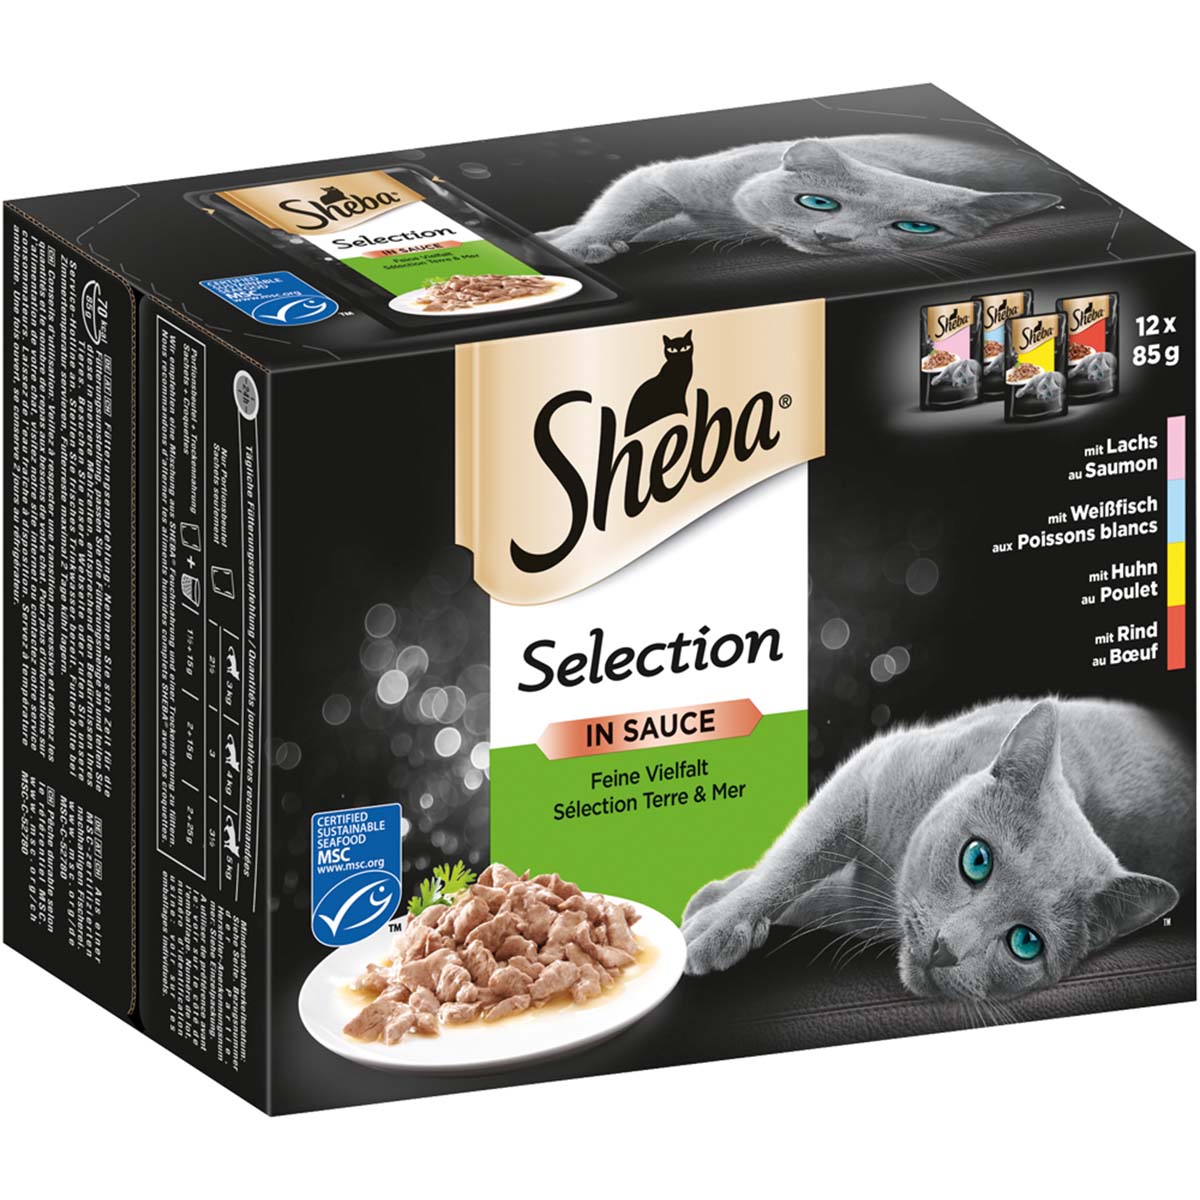 sheba selection in sauce feine vielfalt